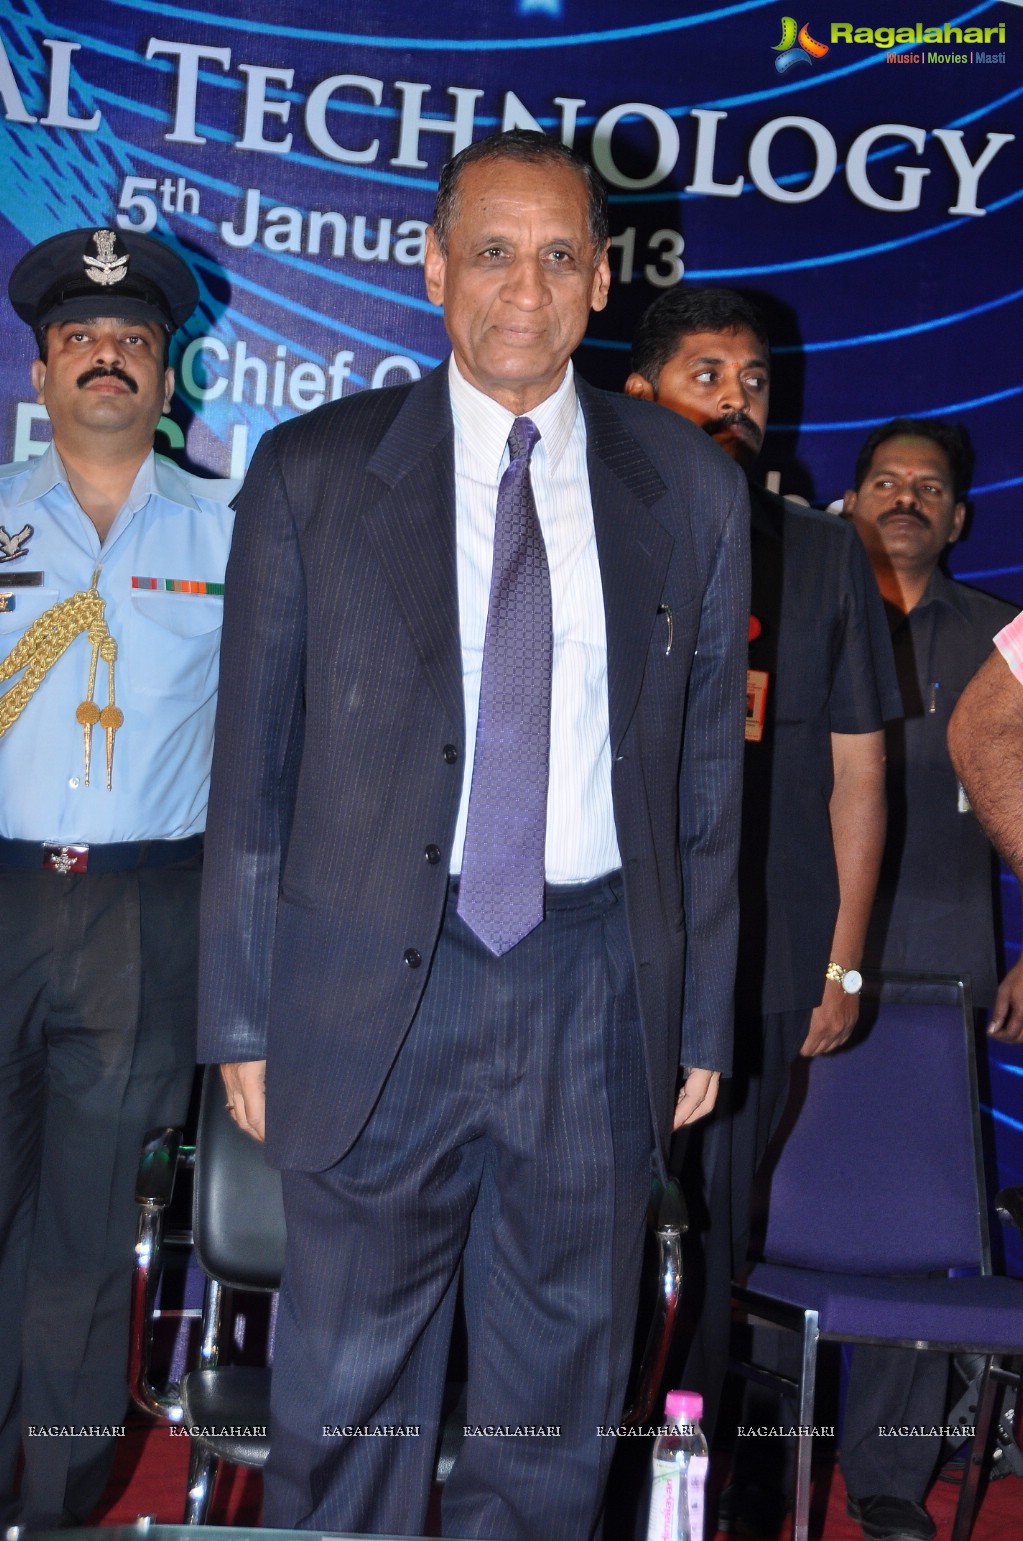 ITsAP Technology Day 2013, Hyderabad